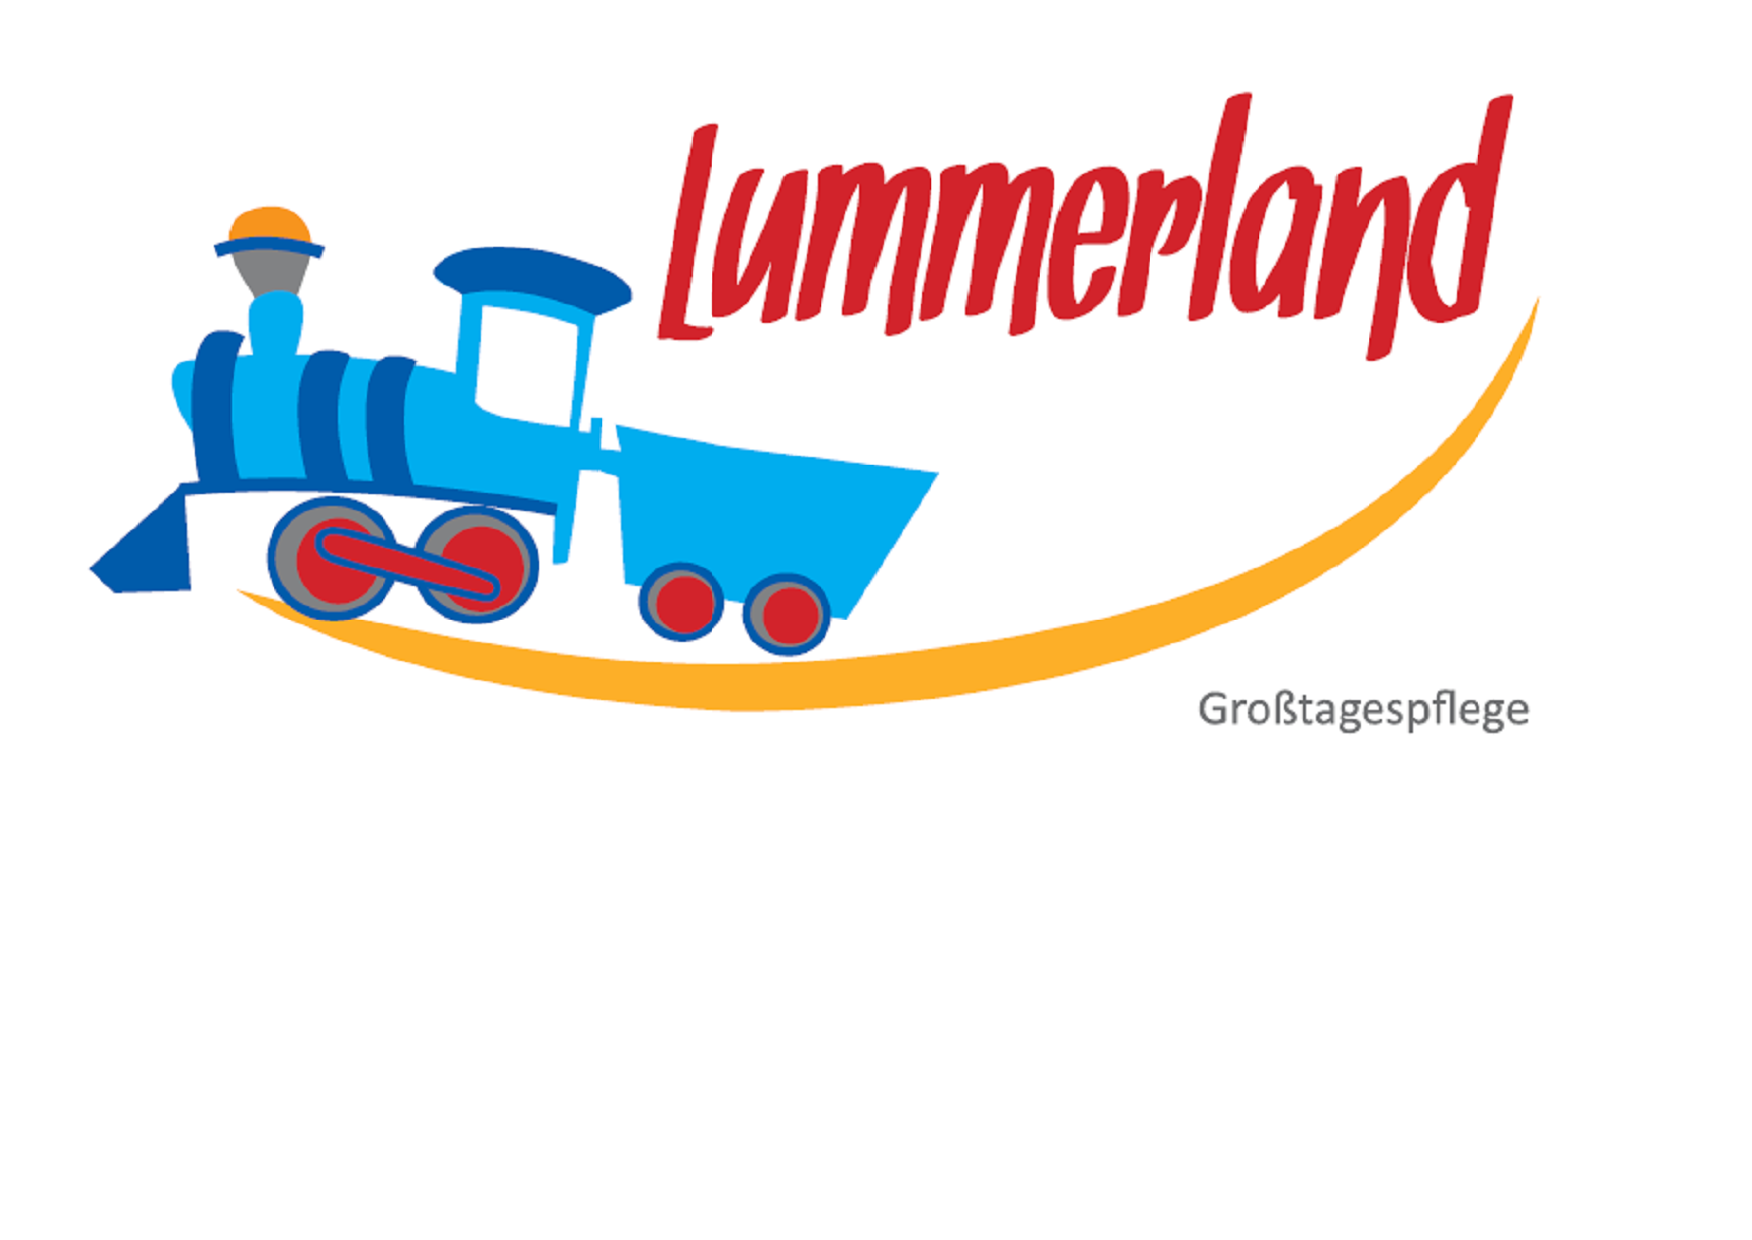 Pflegenest "Lummerland"
Pommernallee 37, 41539 Dormagen